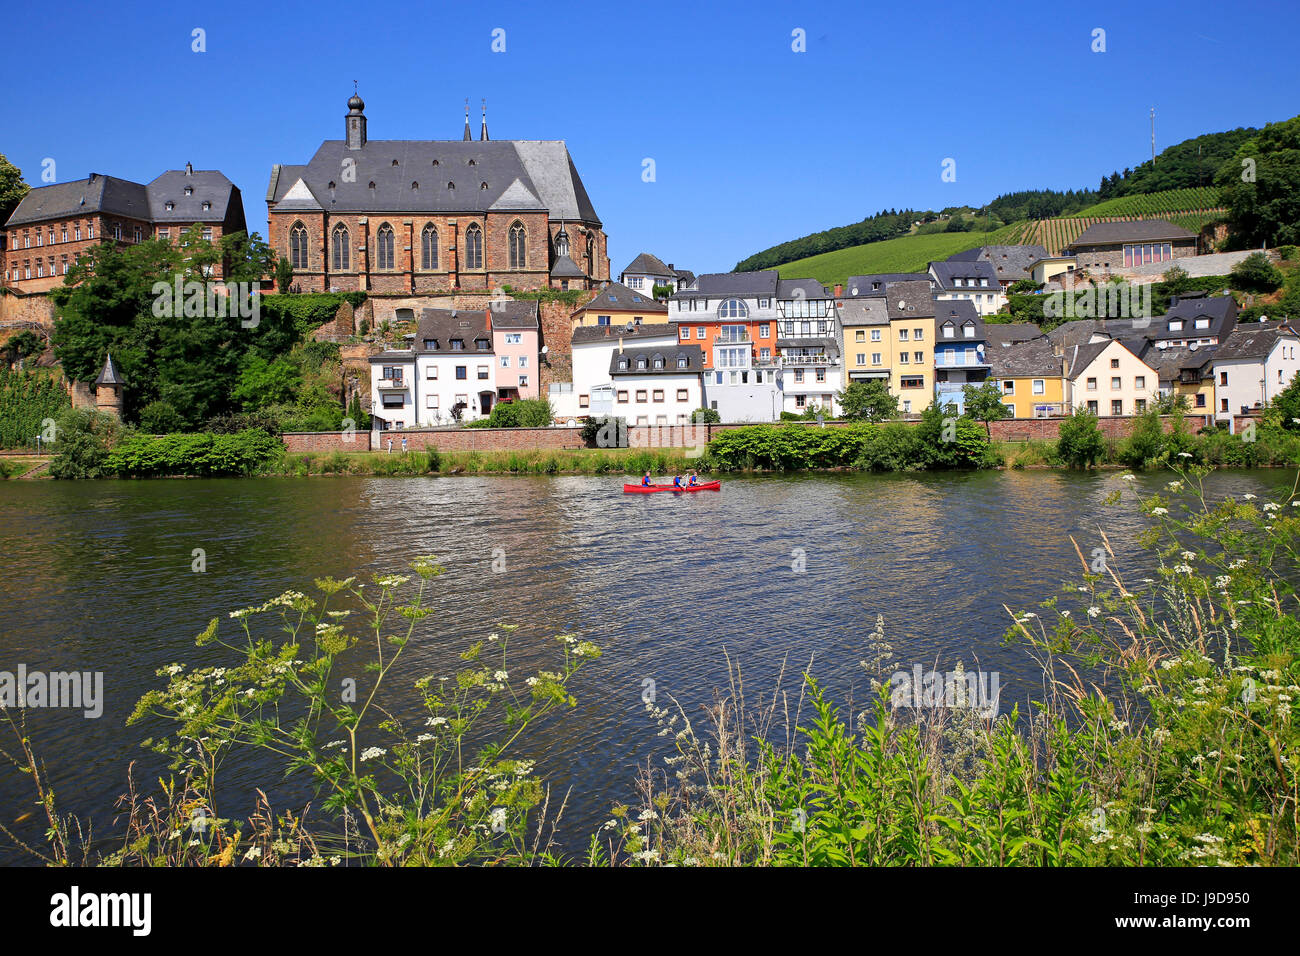 Blick in Richtung Kirche St. Laurentius in Saarburg am Fluss Saar, Rheinland-Pfalz, Deutschland, Europa Stockfoto